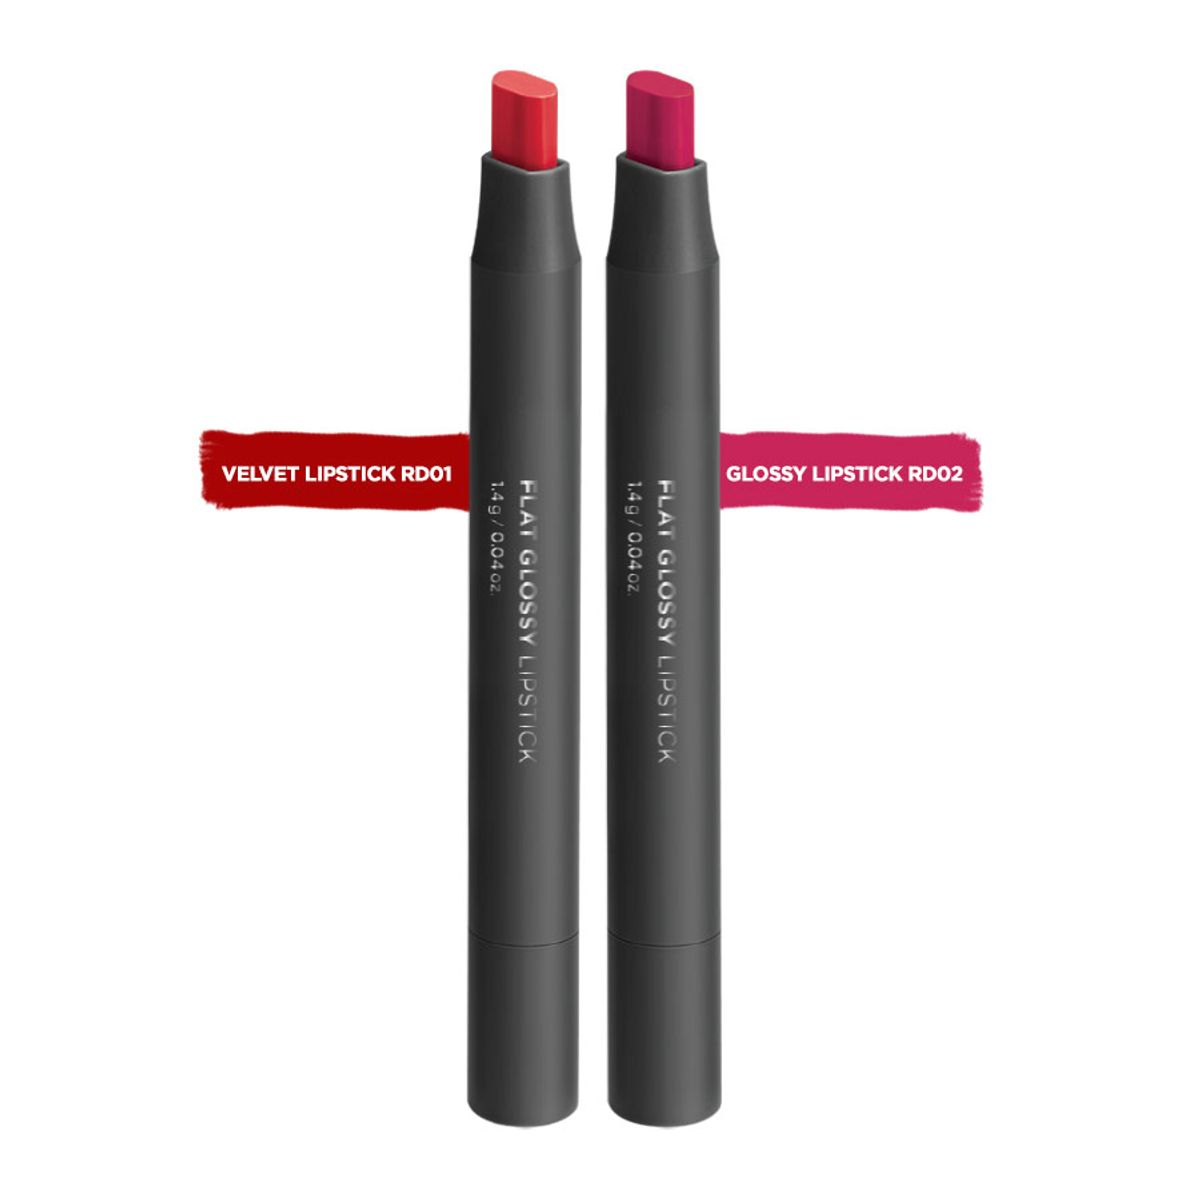 bo-son-flat-lipstick-velvet-lipstick-rd01-glossy-lipstick-rd02-1